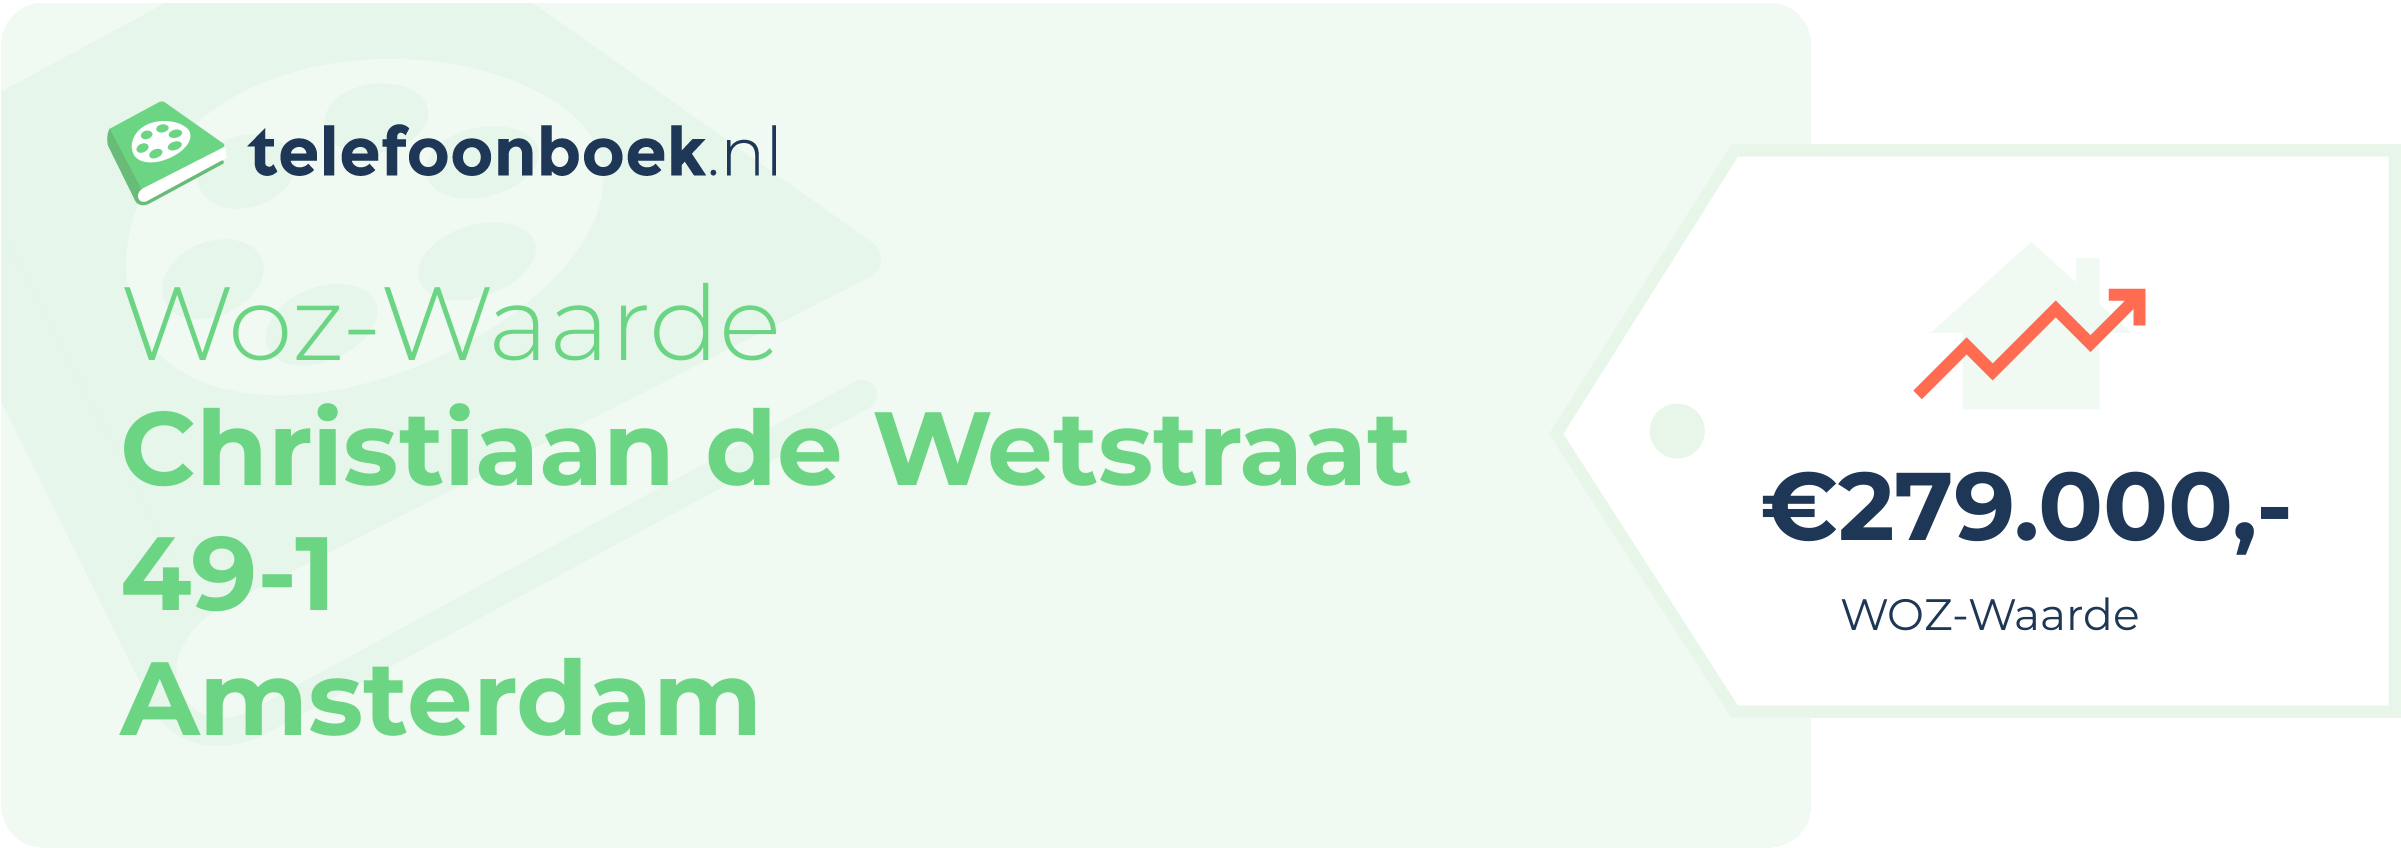 WOZ-waarde Christiaan De Wetstraat 49-1 Amsterdam